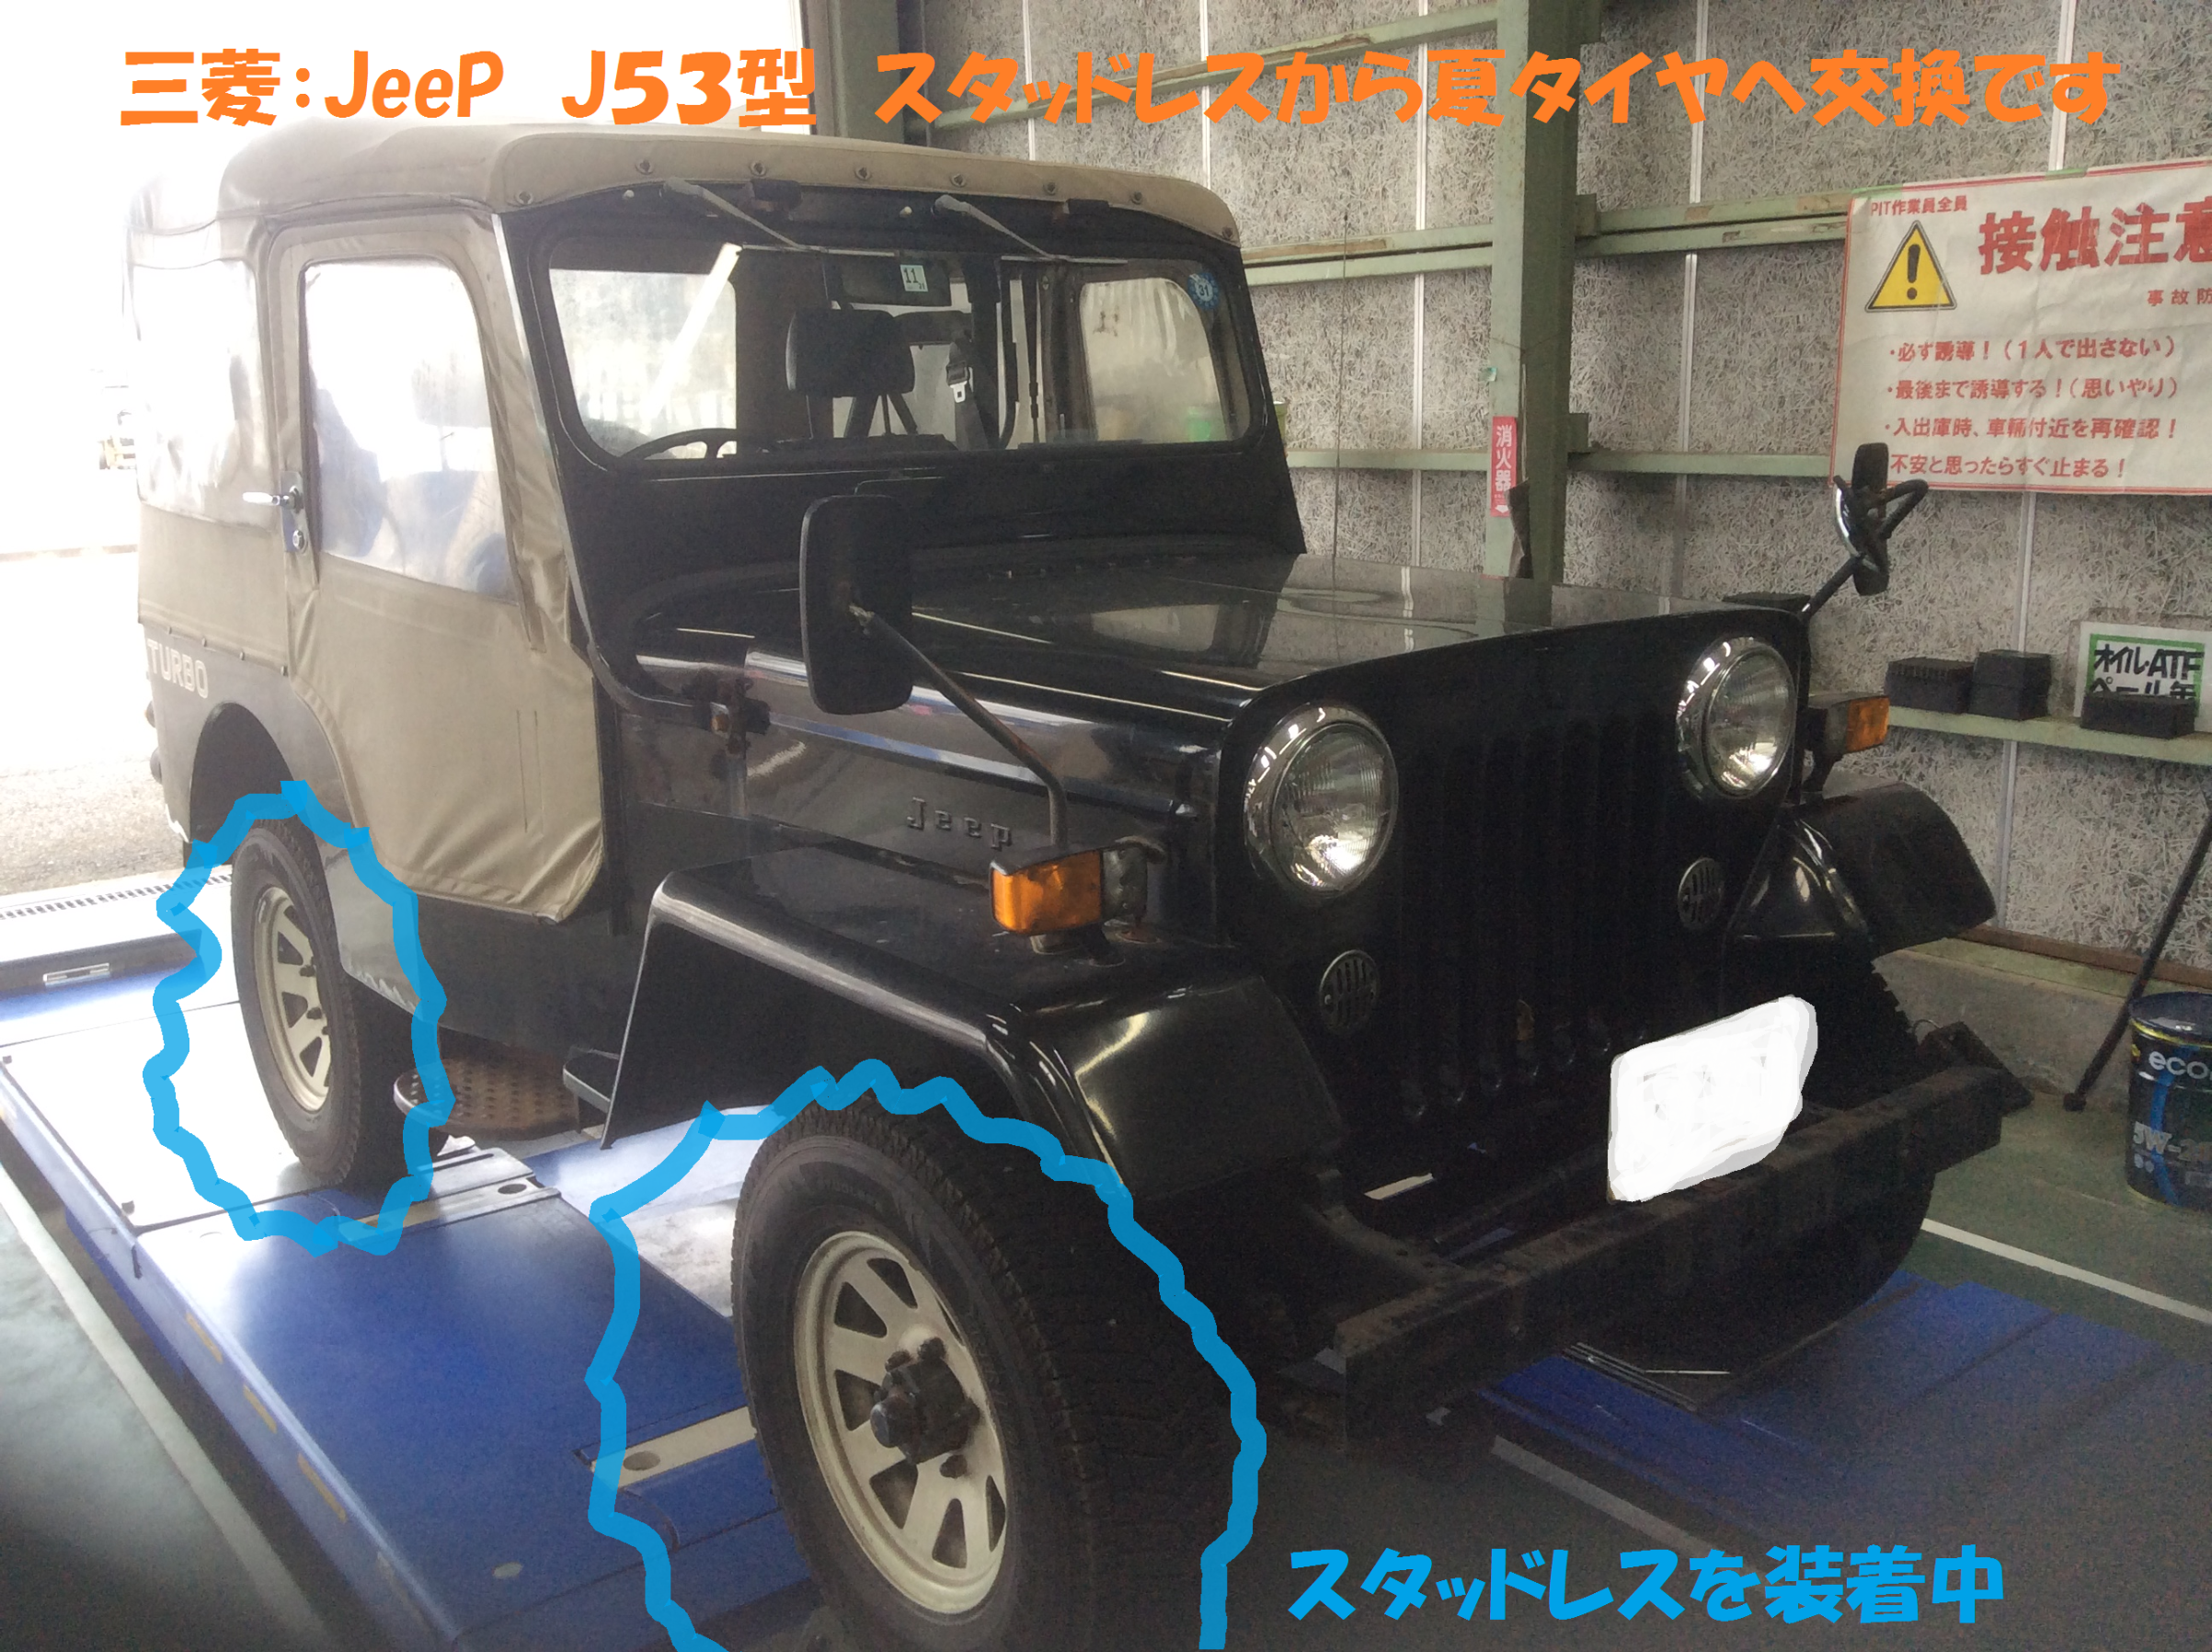 【超希少】三菱 ジープ JEEP J30系 純正 デットストック部品 まとめ売り自動車/バイク